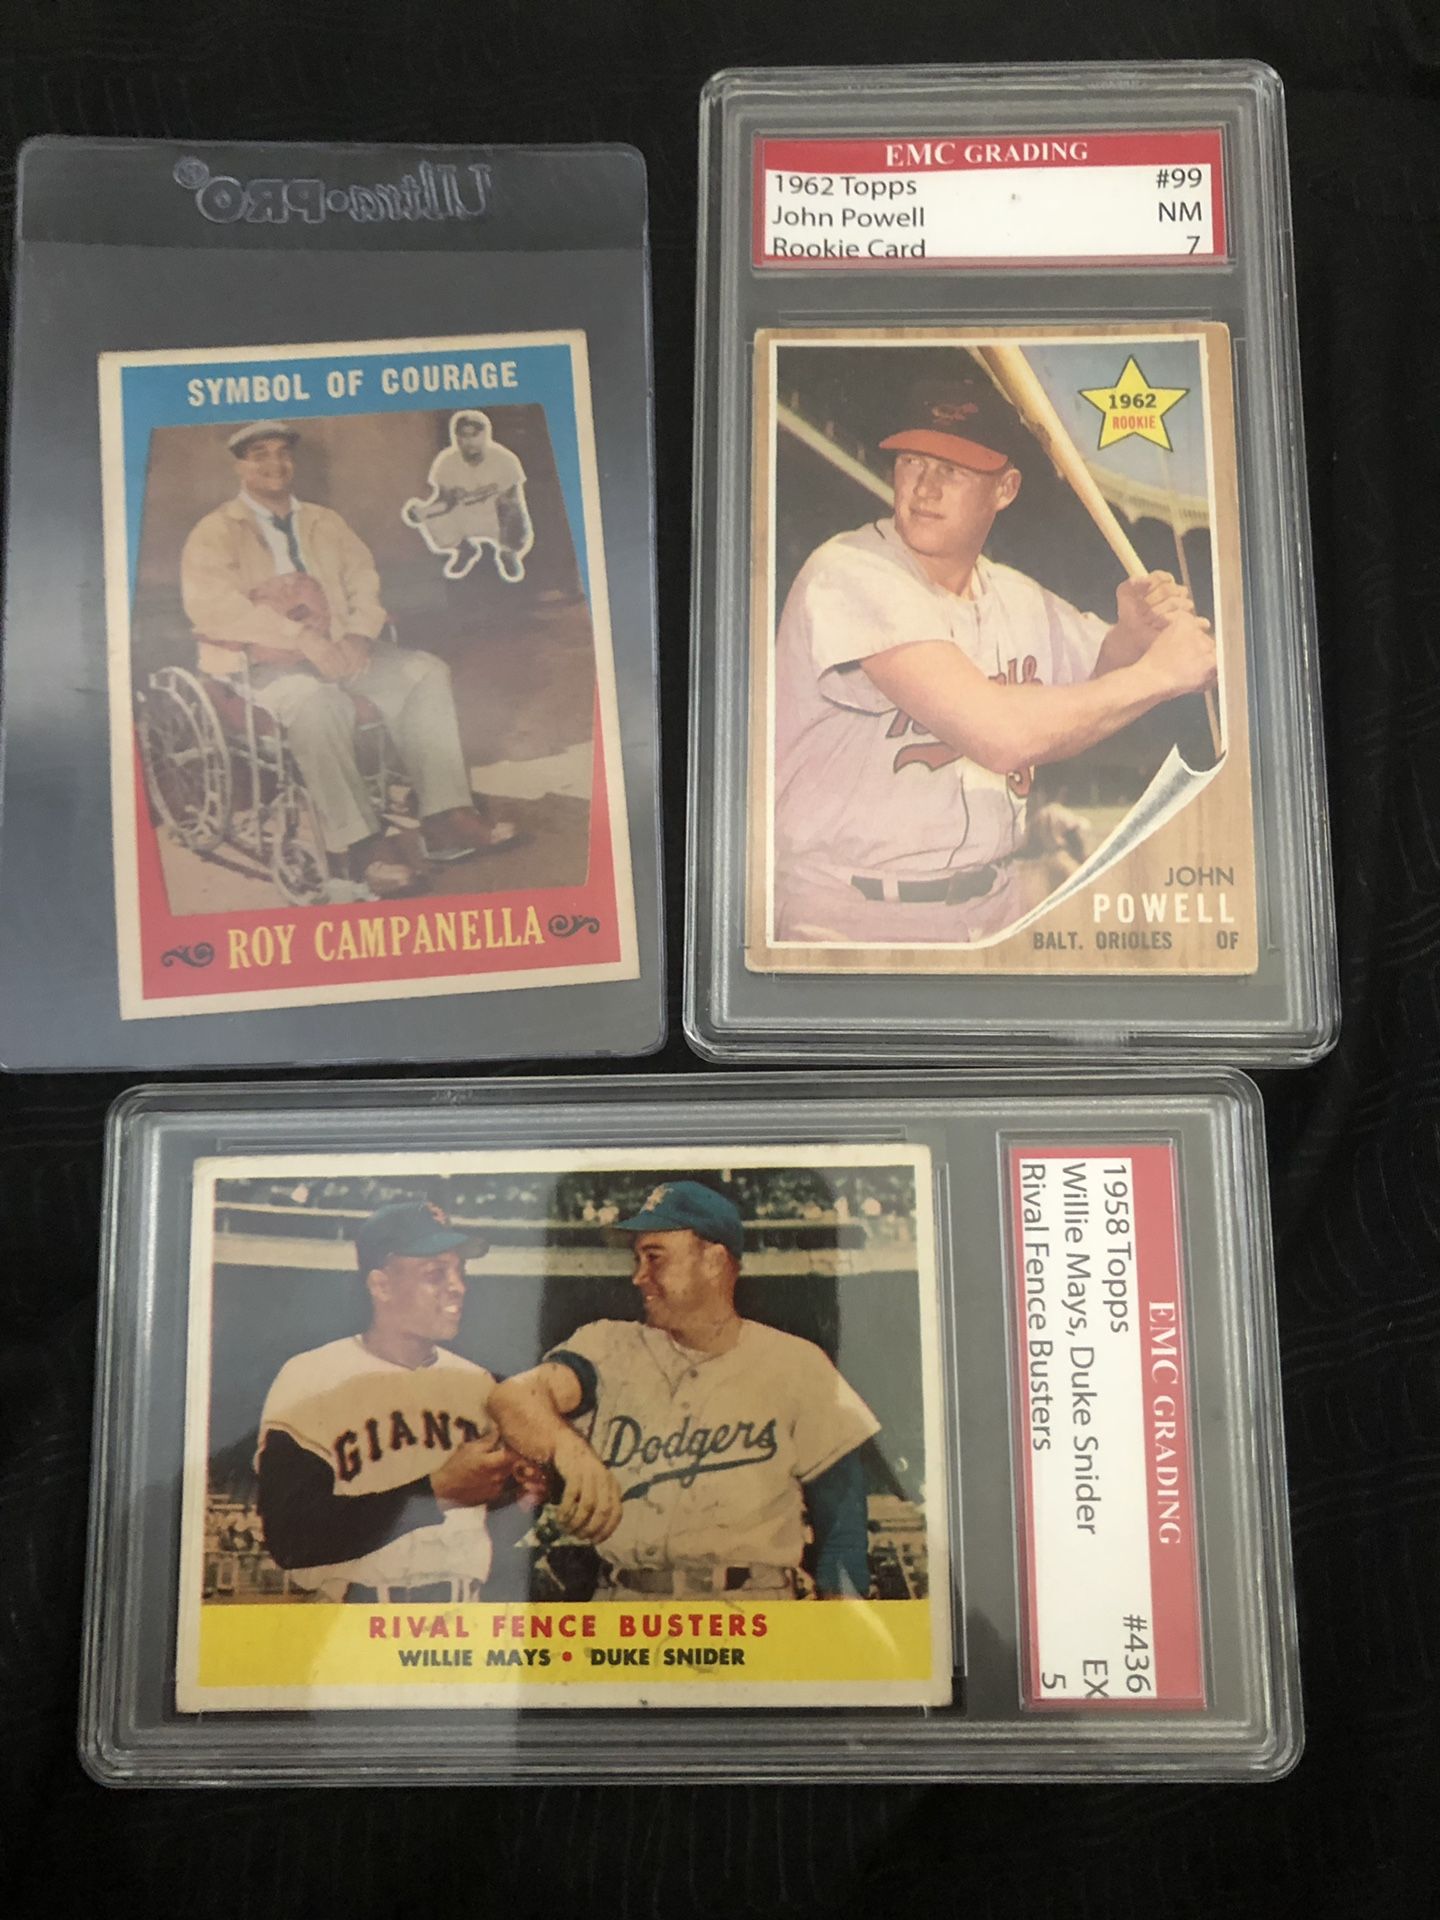 Vintage Topps Baseball cards